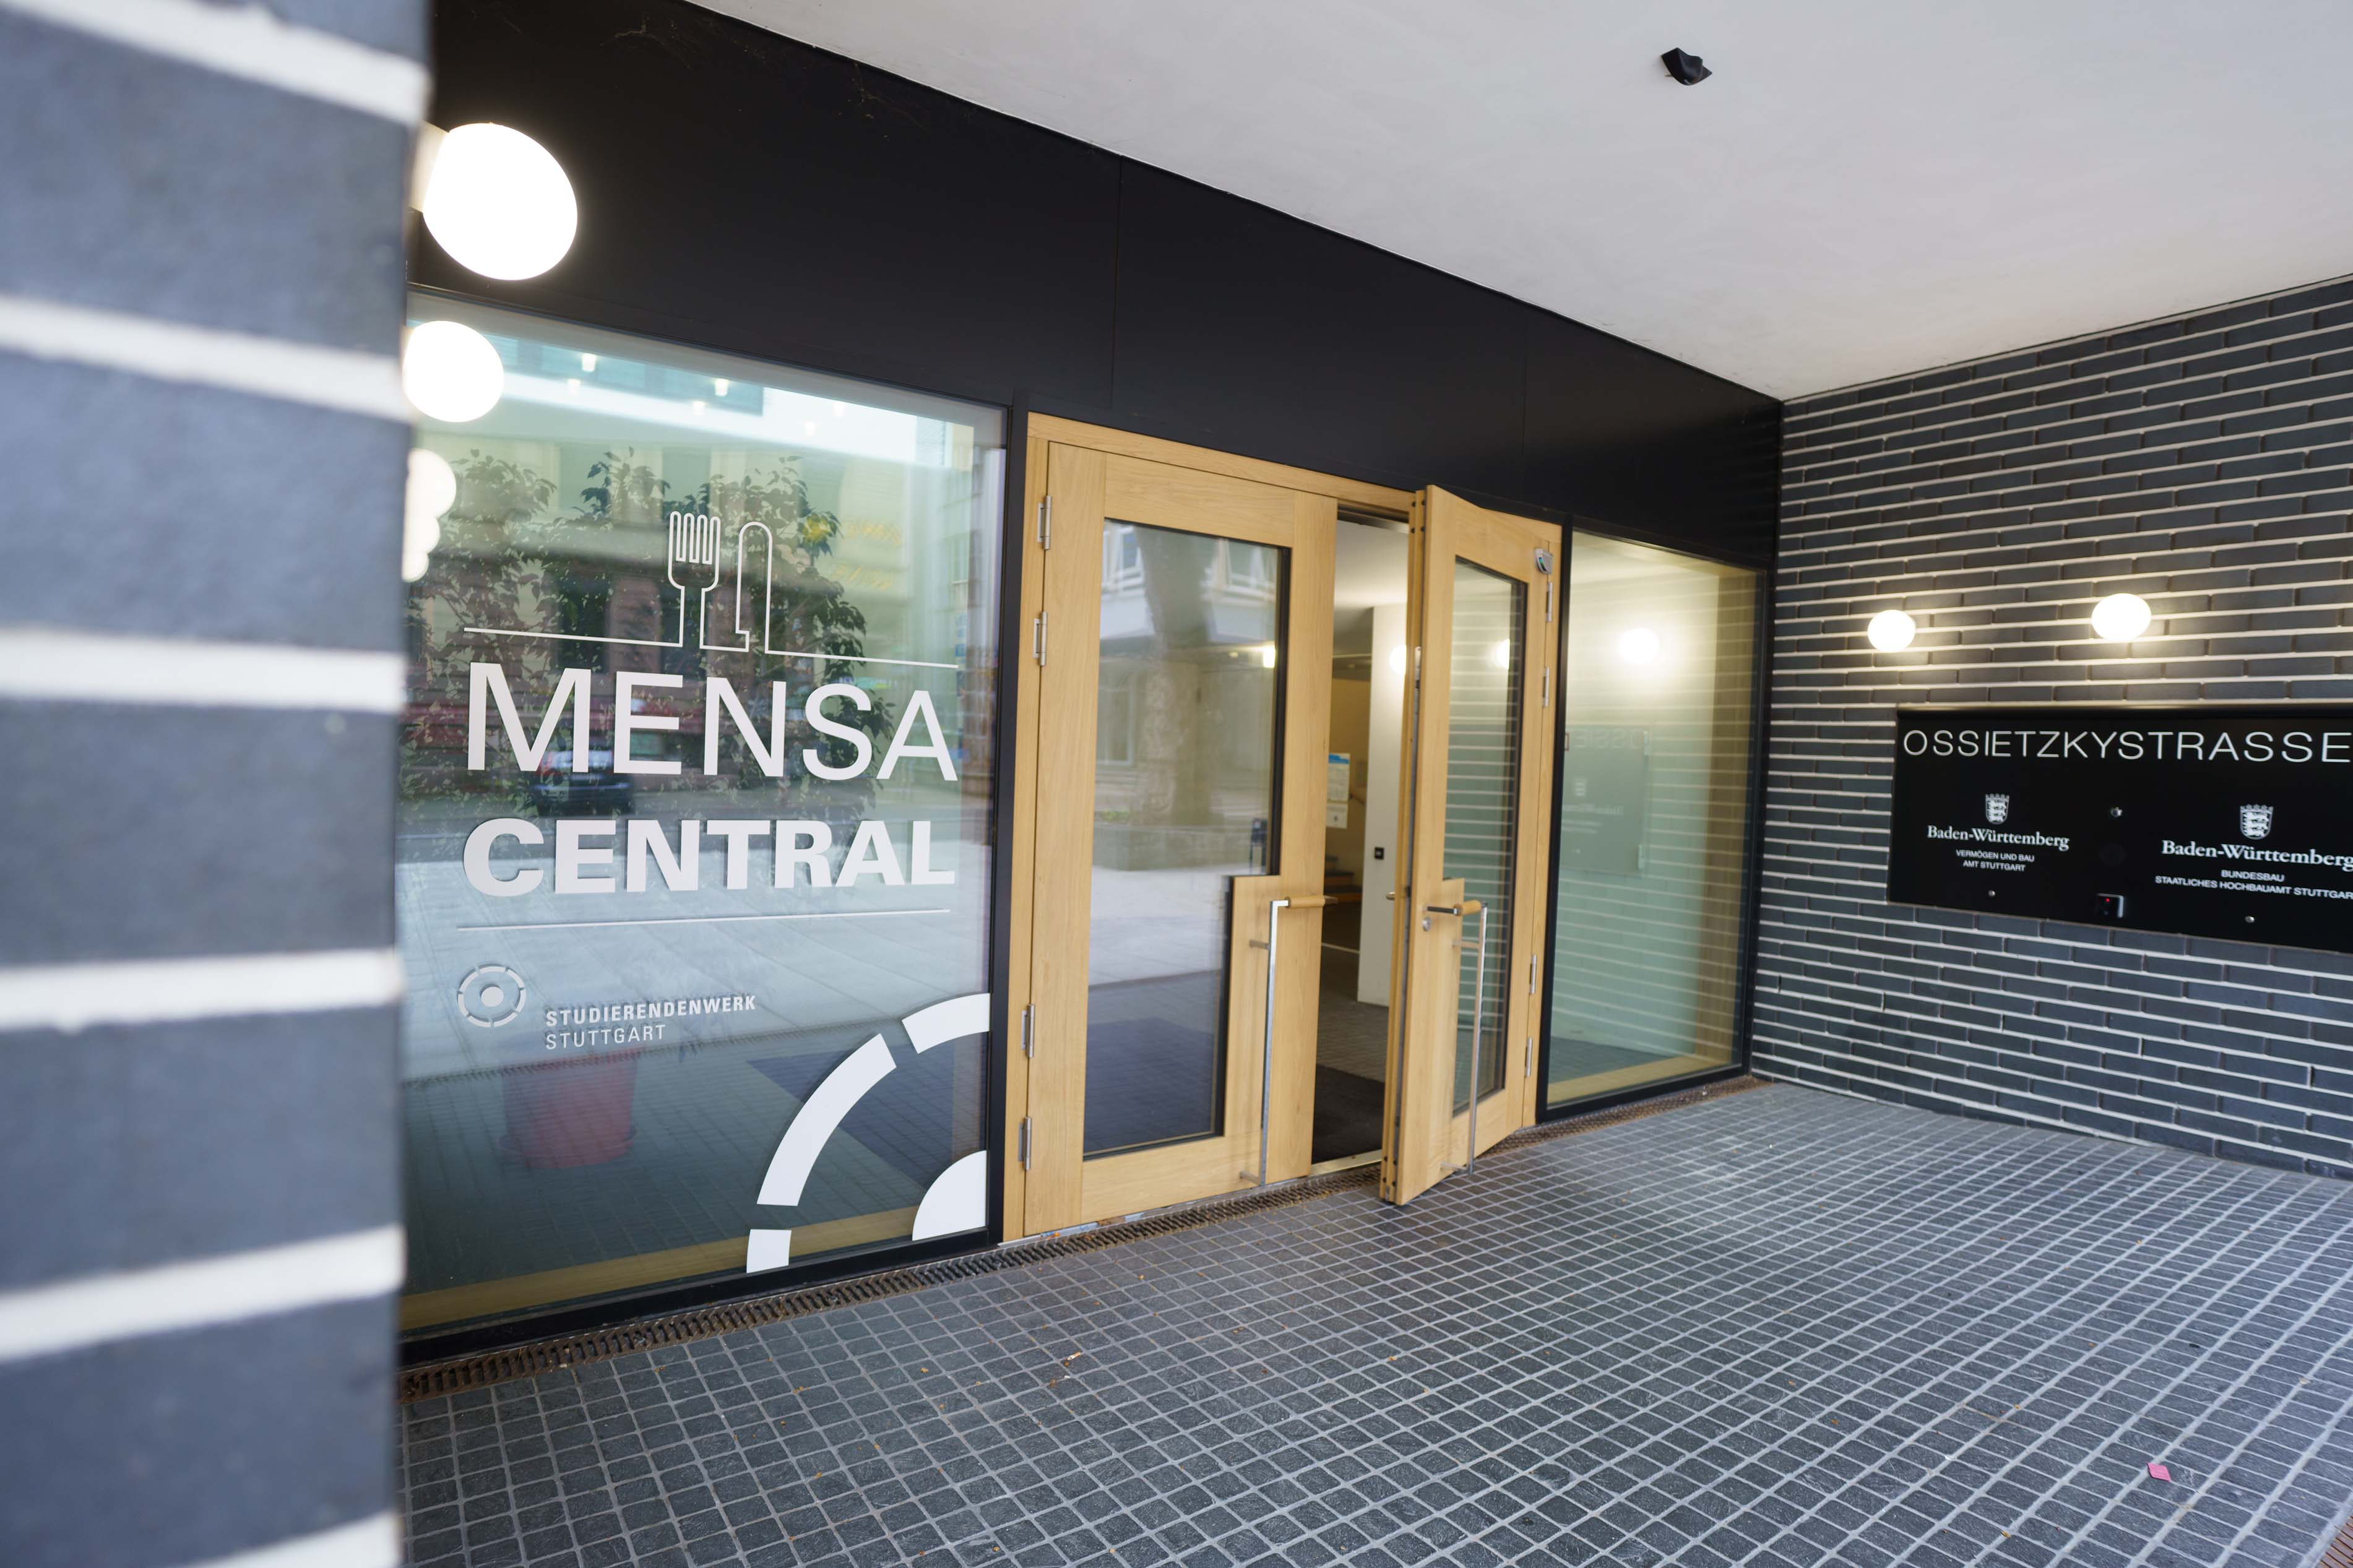 Eingangstüre zur Mensa Central